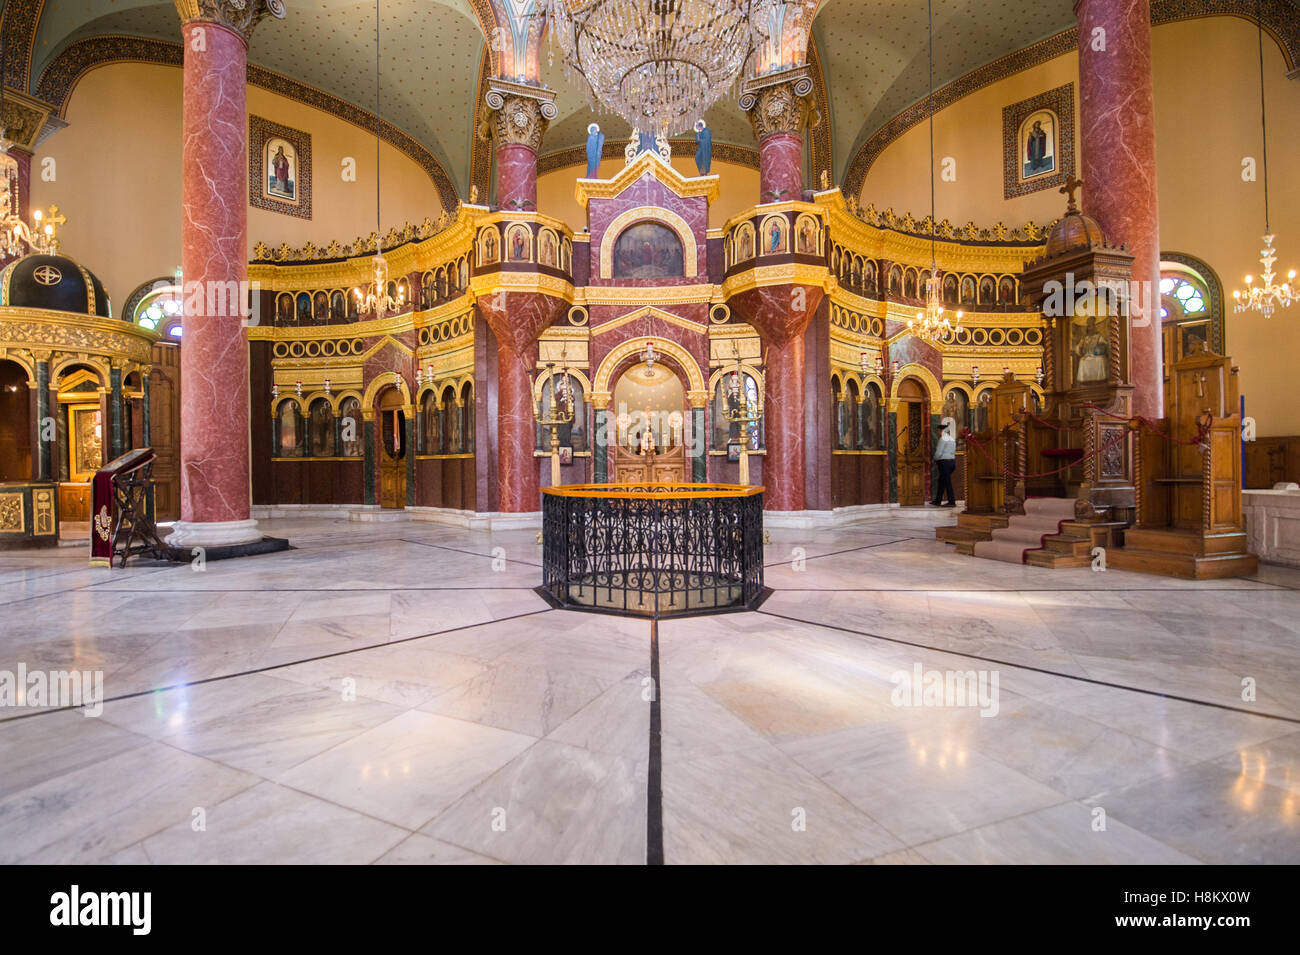 Il Cairo, Egitto. Interni ornati del ricostruito monastero di St George nel quartiere copto al Cairo. Foto Stock